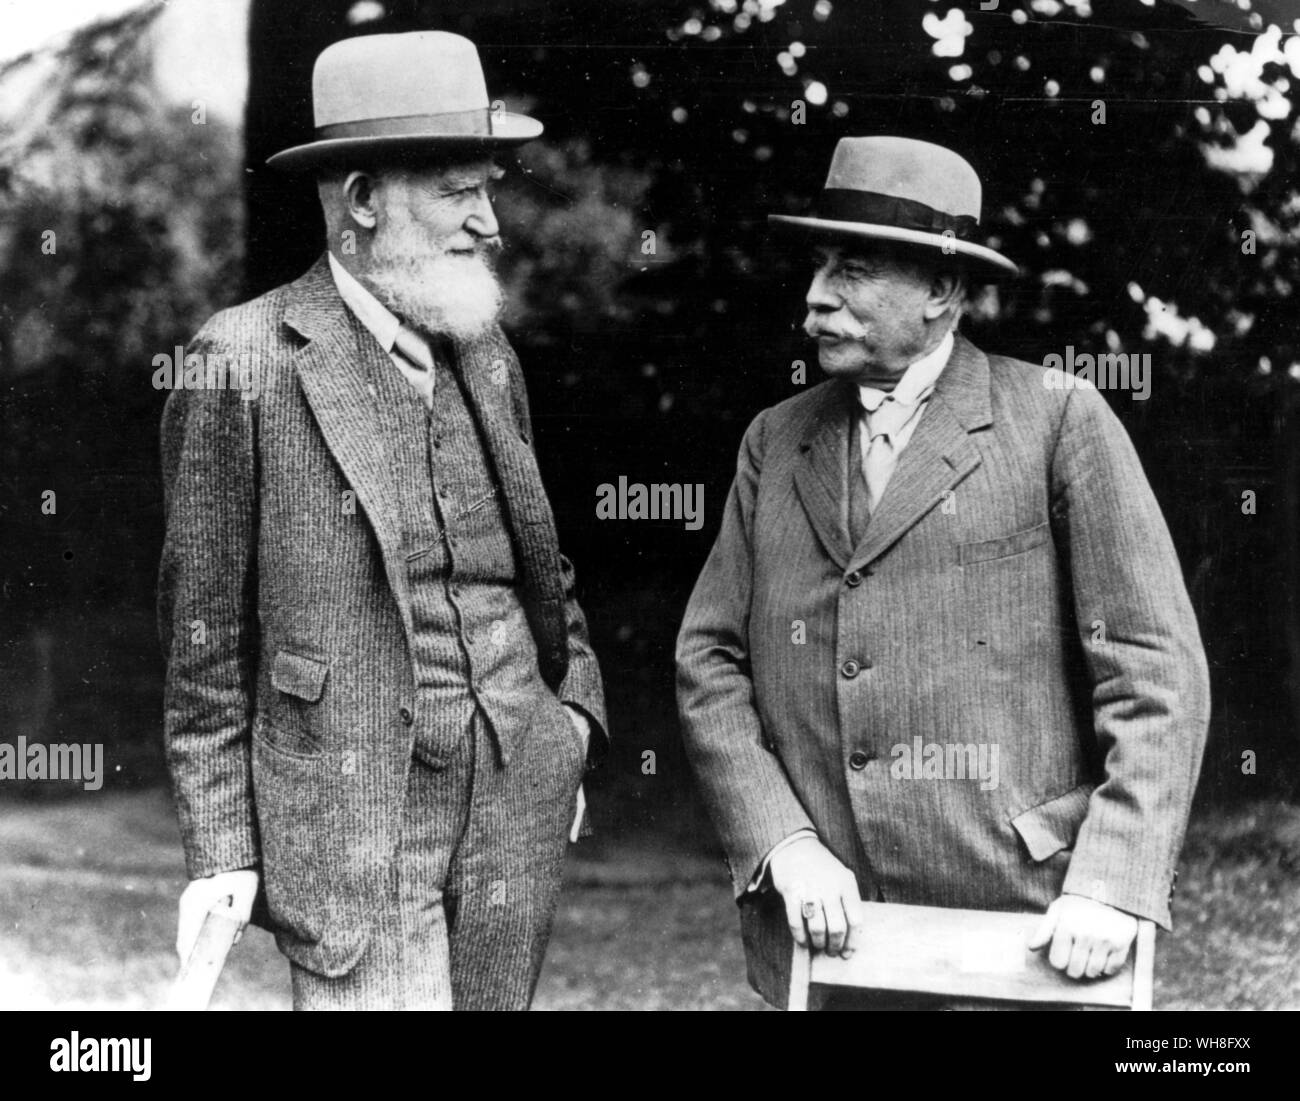 George Bernard Shaw (1856-1950) und Sir Edward Elgar (1857-1934), Komponist an der ersten Malvern Festival im Jahr 1929. Shaw war ein irischer Dramatiker und Nobelpreisträger für Literatur im Jahre 1925. Der Genius der Shaw Seite 77. Stockfoto